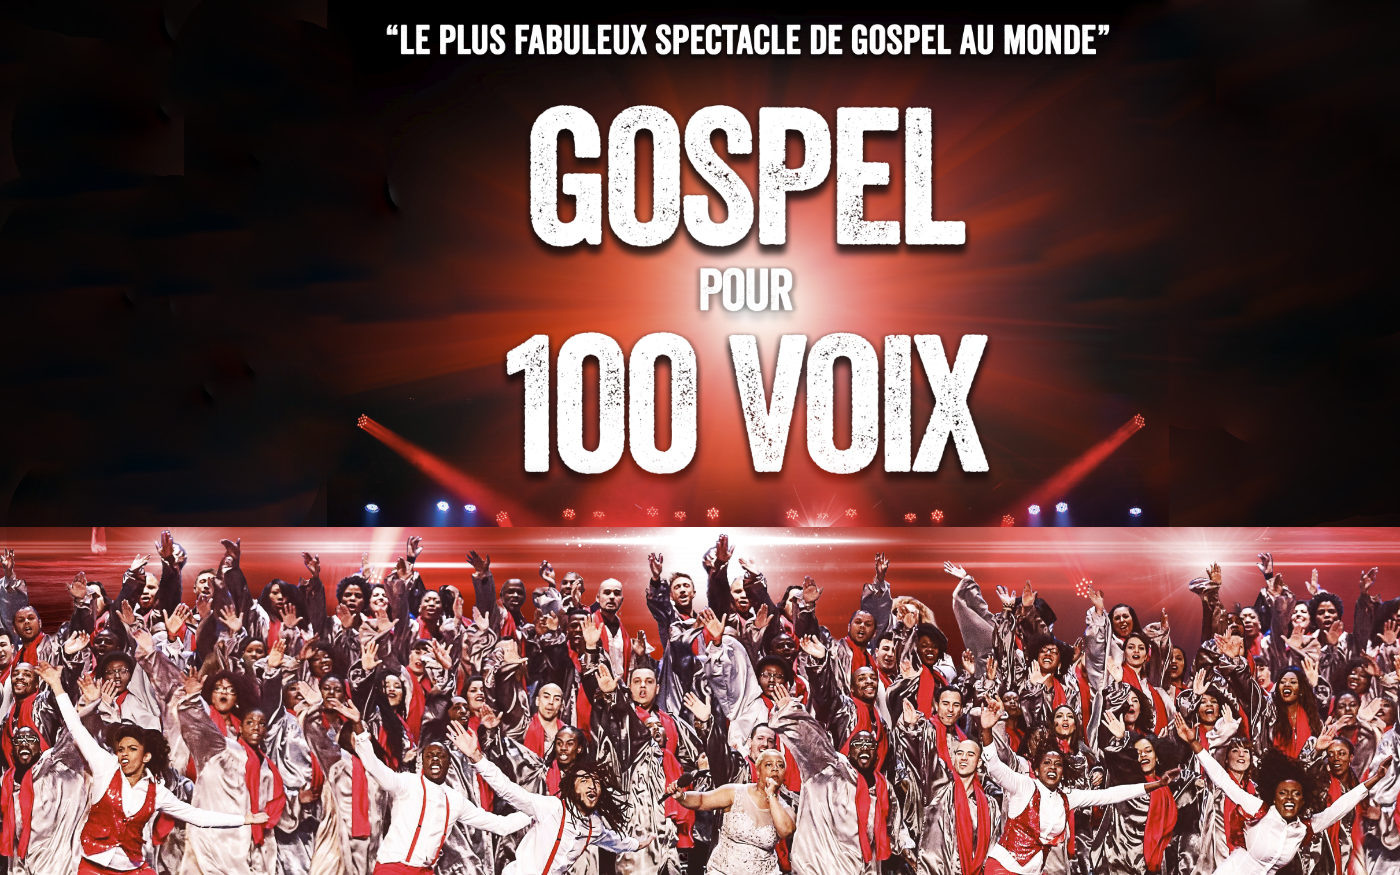 Gospel Pour 100 Voix - The Tour For Peace at Espace Pierre Bachelet - Cartonnerie Tickets